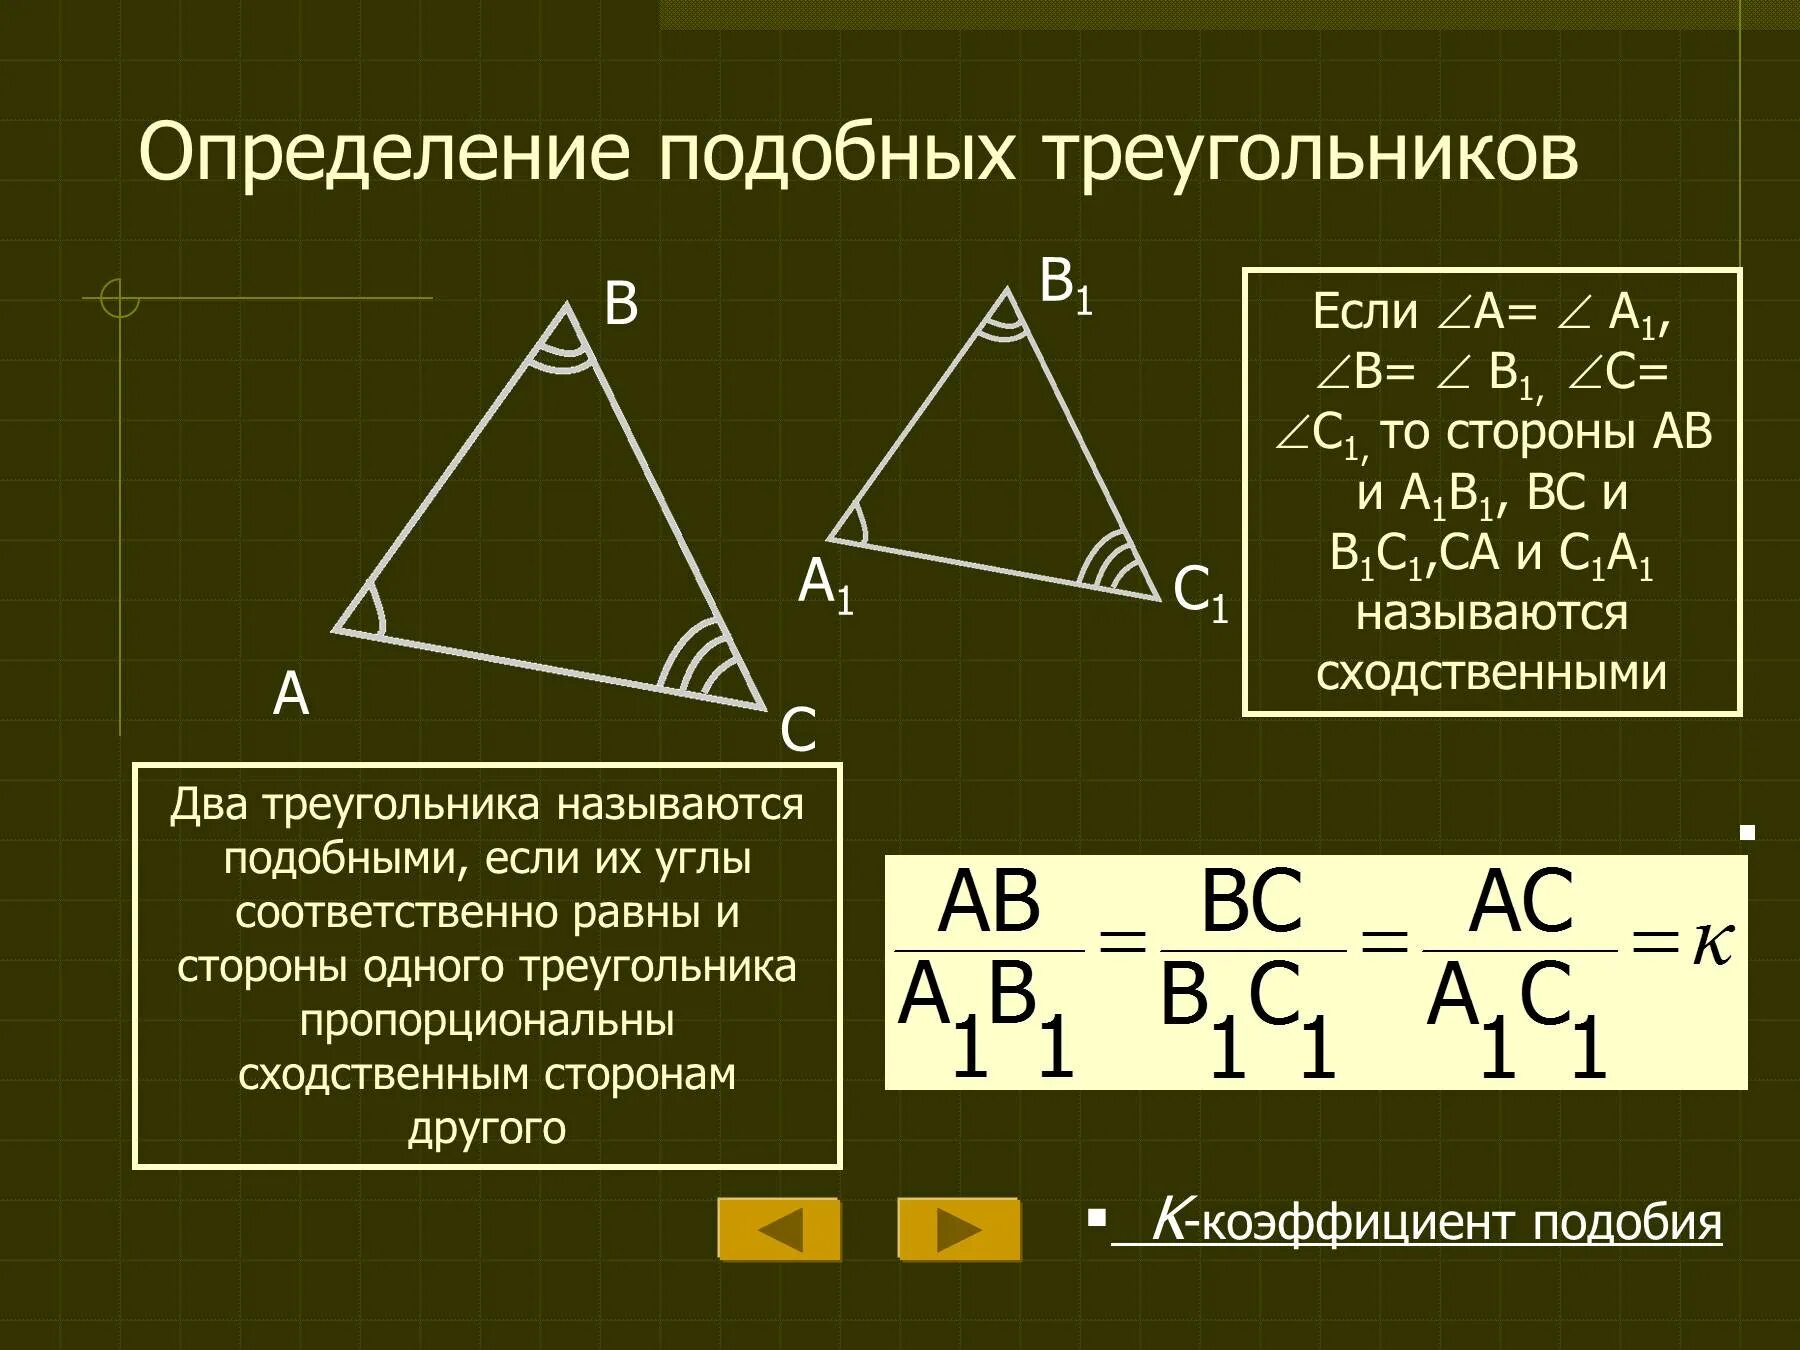 Определение подобных треугольников. Определение подобных треугольнико. Определение и признаки подобия треугольников. Стороны подобных треугольников. Аналогичный подобный